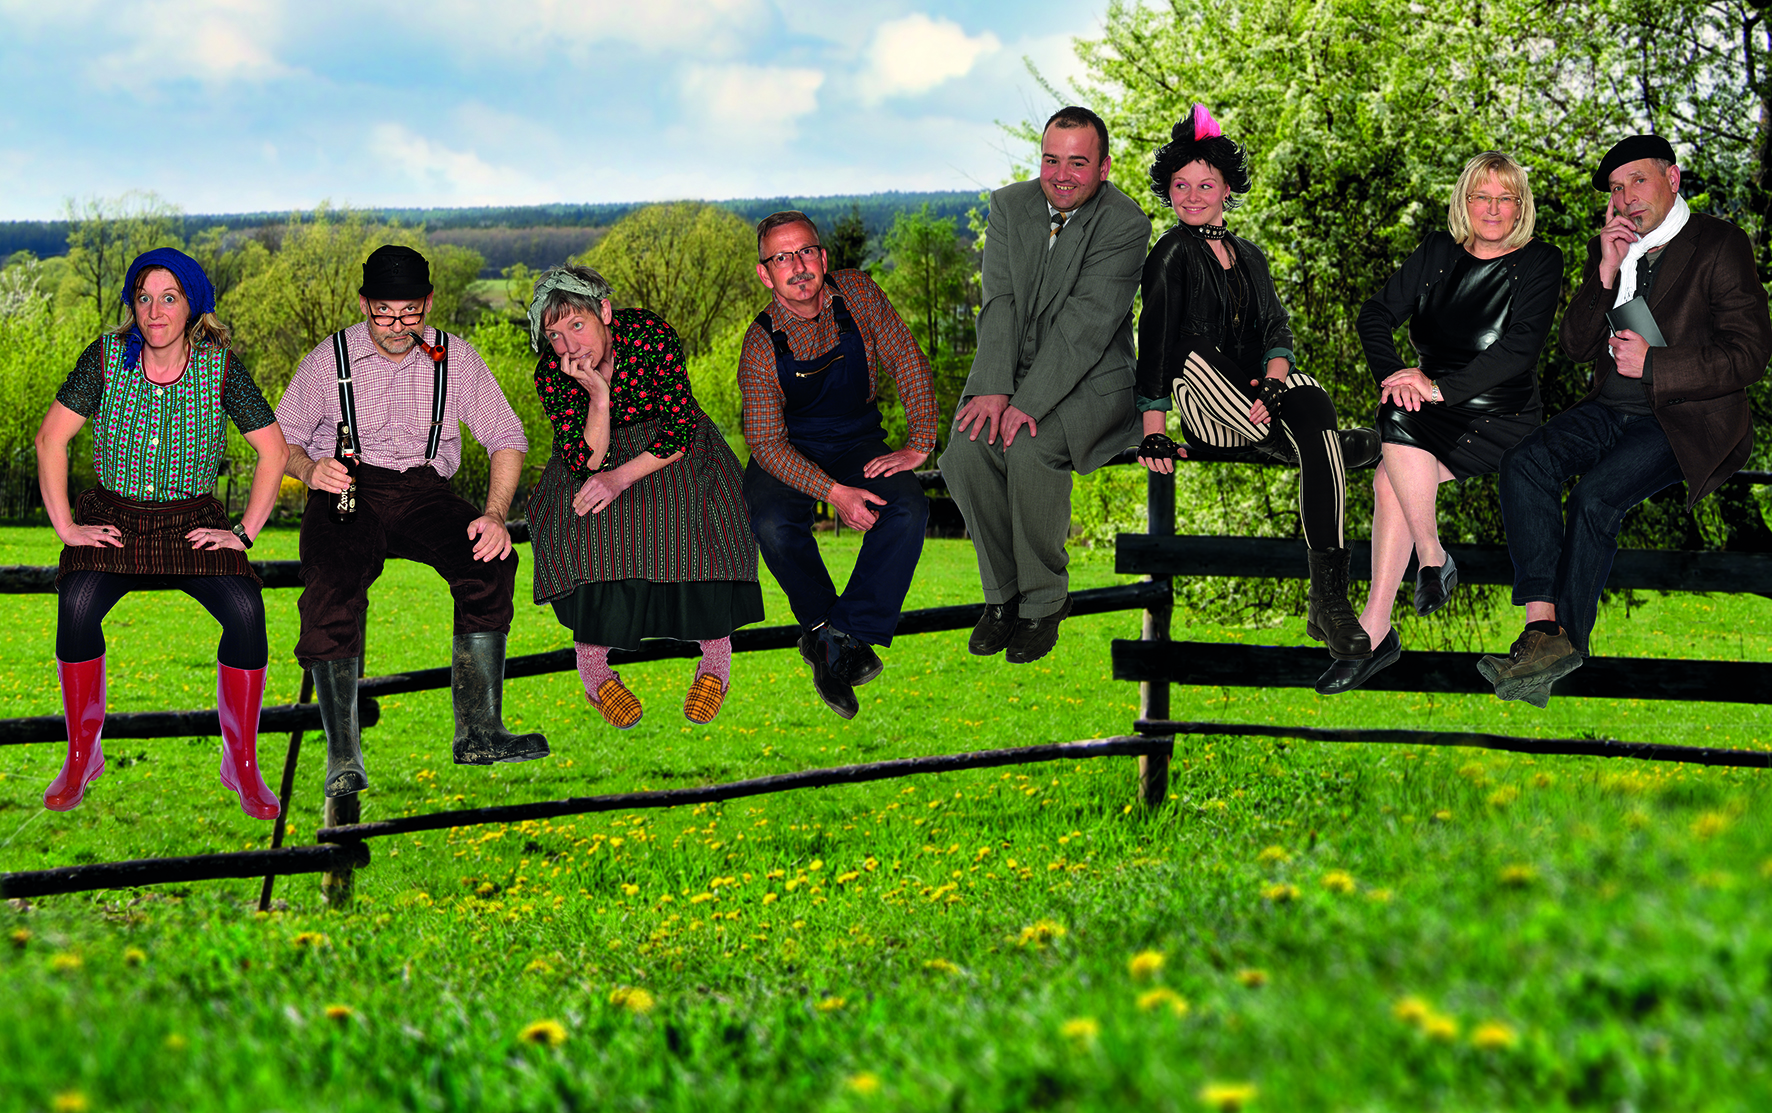 Das Bild zeigt eine Gruppe von 8 Menschen, die auf einem hölzernen Weidezaun sitzen. Die Weide ist grün, der Himmel im Hintergrund blau.